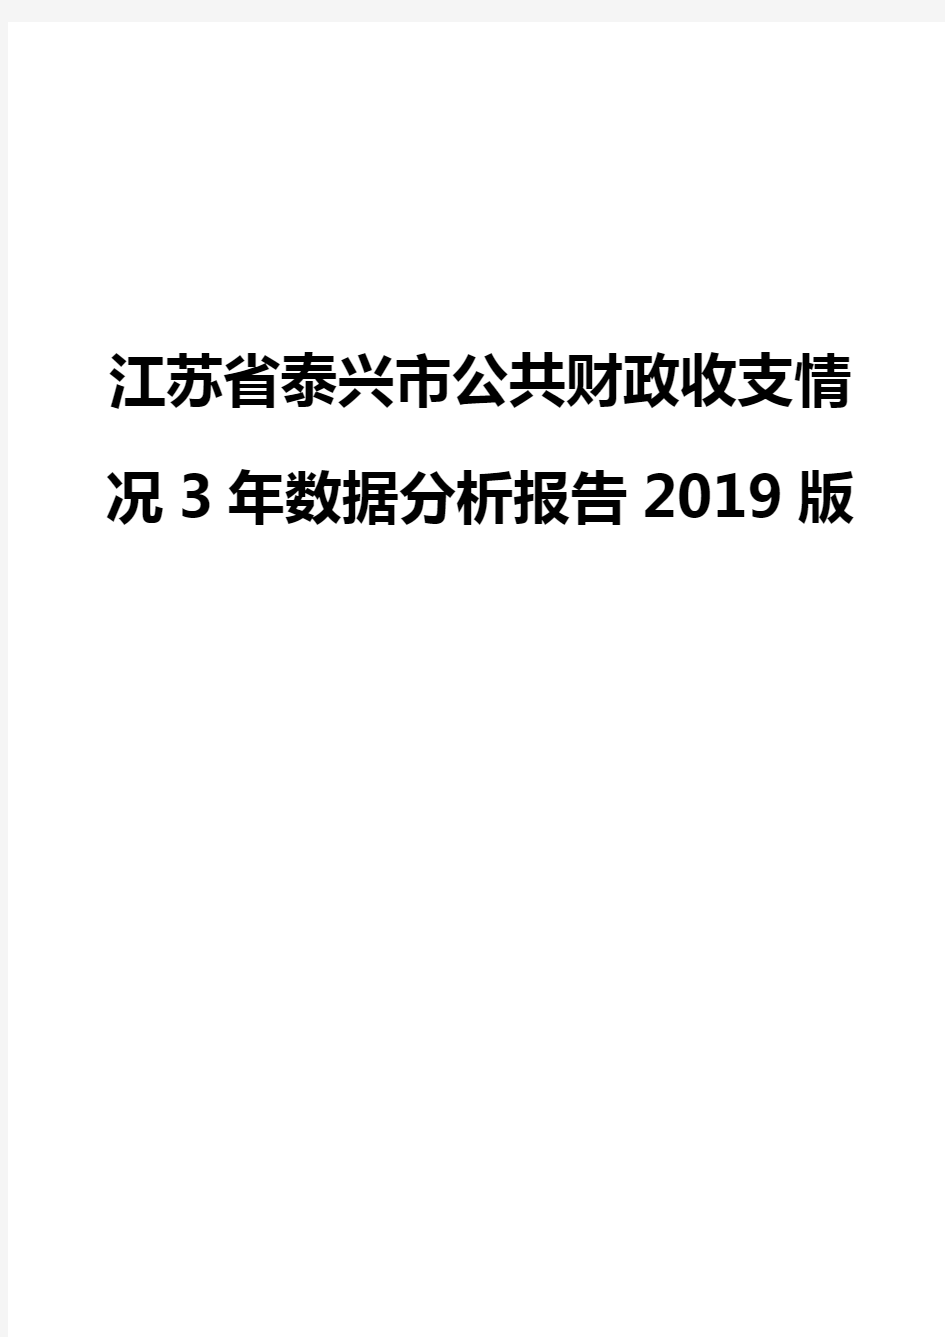 江苏省泰兴市公共财政收支情况3年数据分析报告2019版